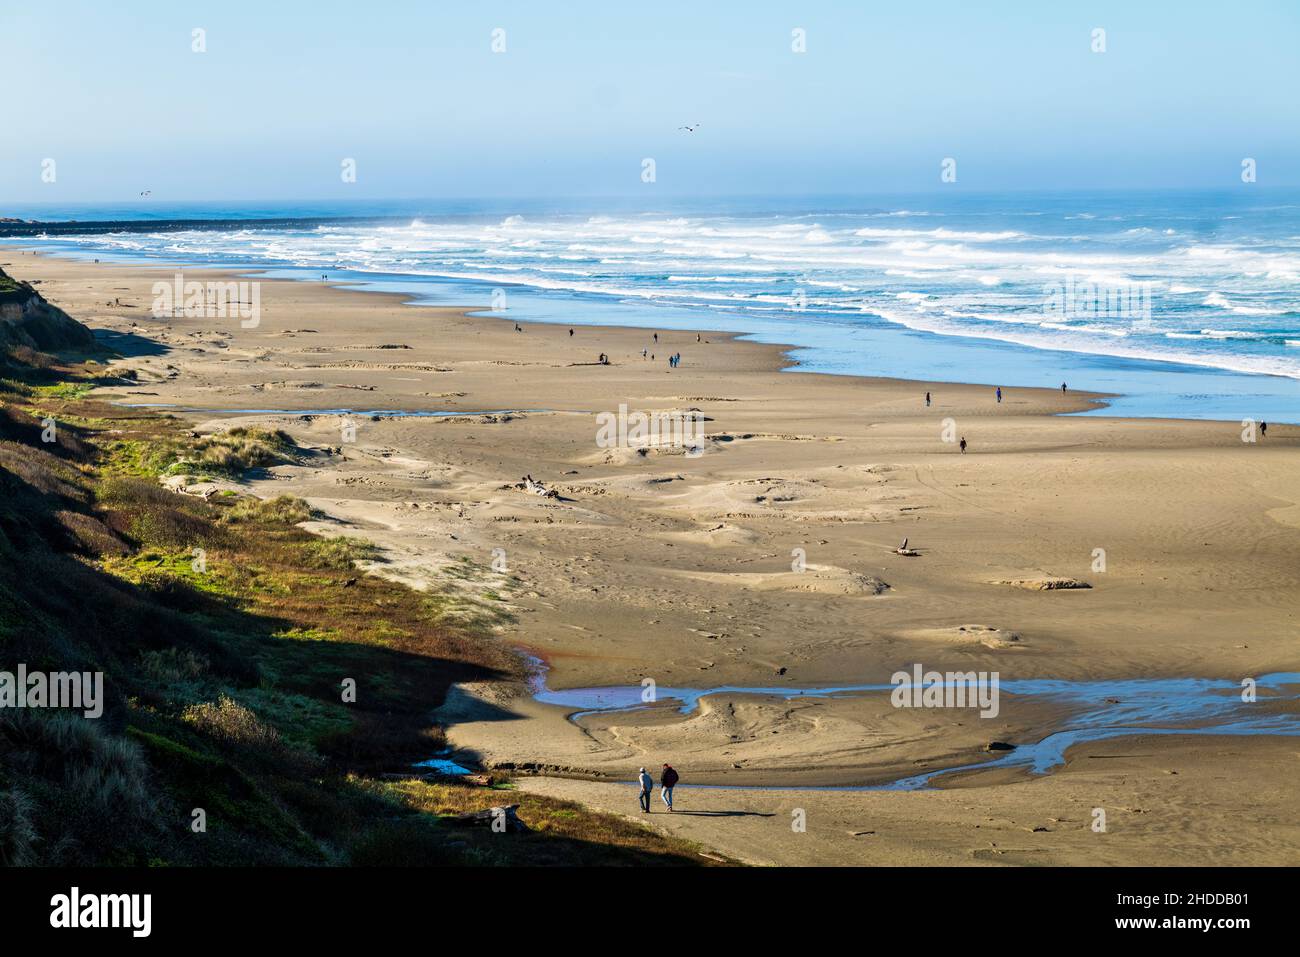 Les visiteurs marchent sur la plage, l'océan Pacifique, la côte de l'Oregon, Newport, Oregon,ÉTATS-UNIS Banque D'Images